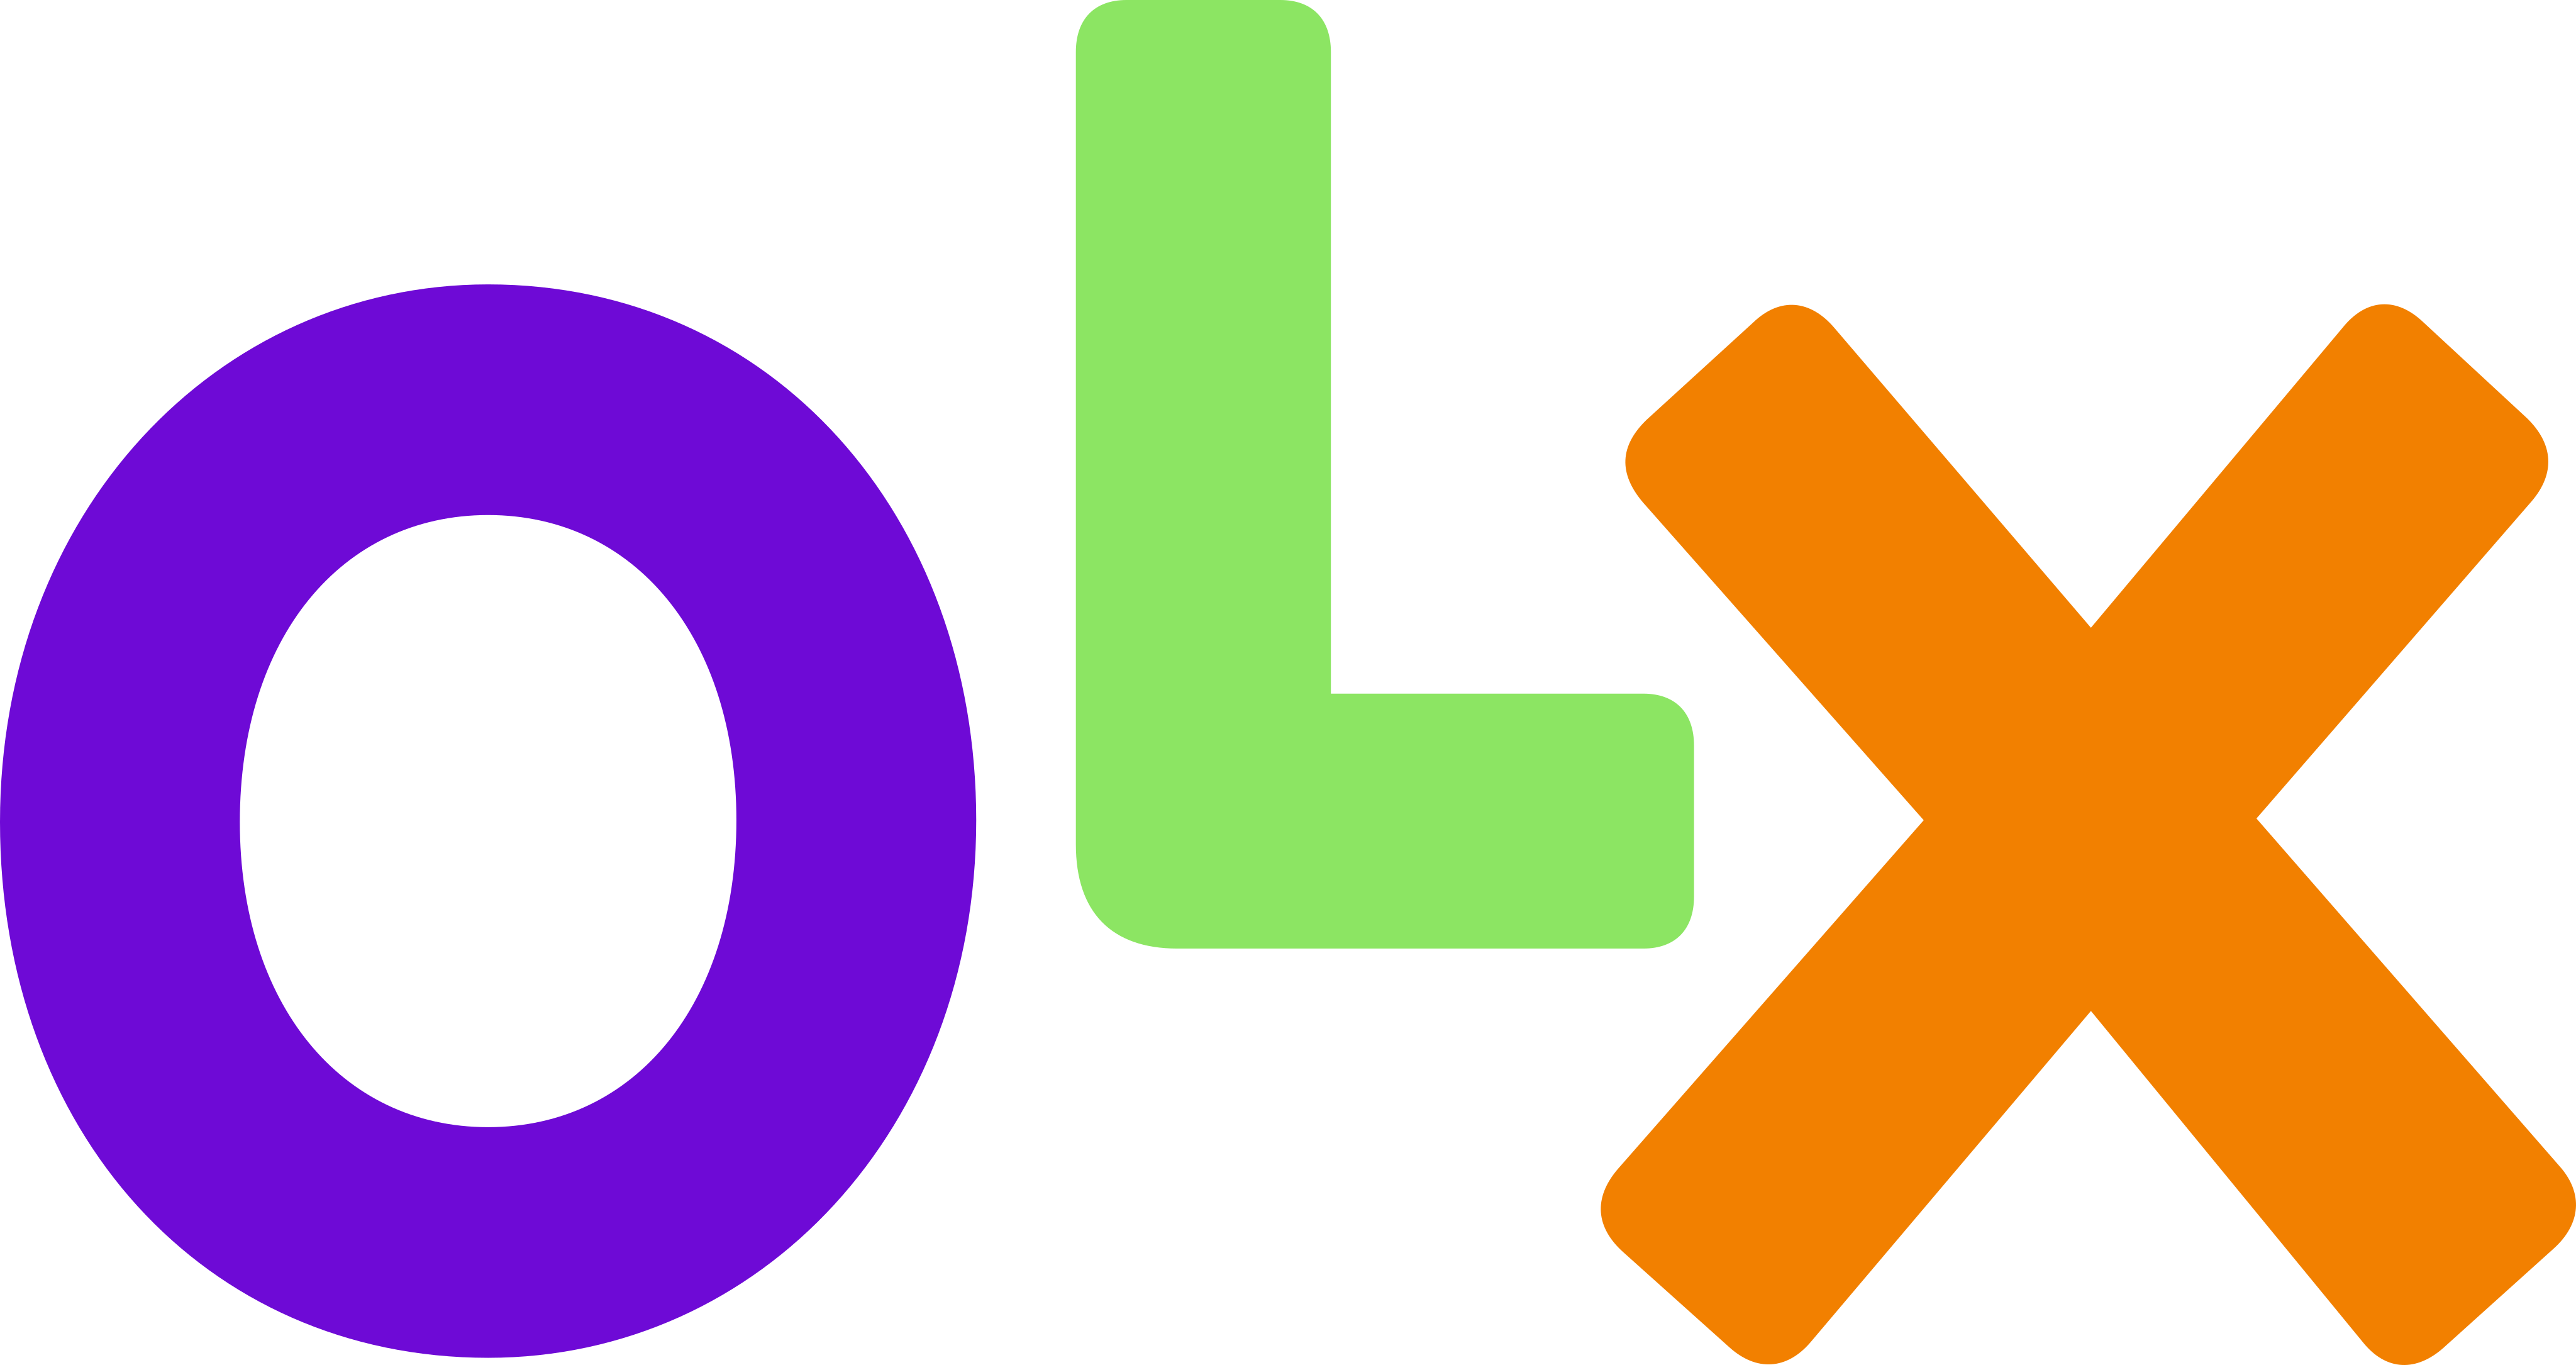 olx-logo-13